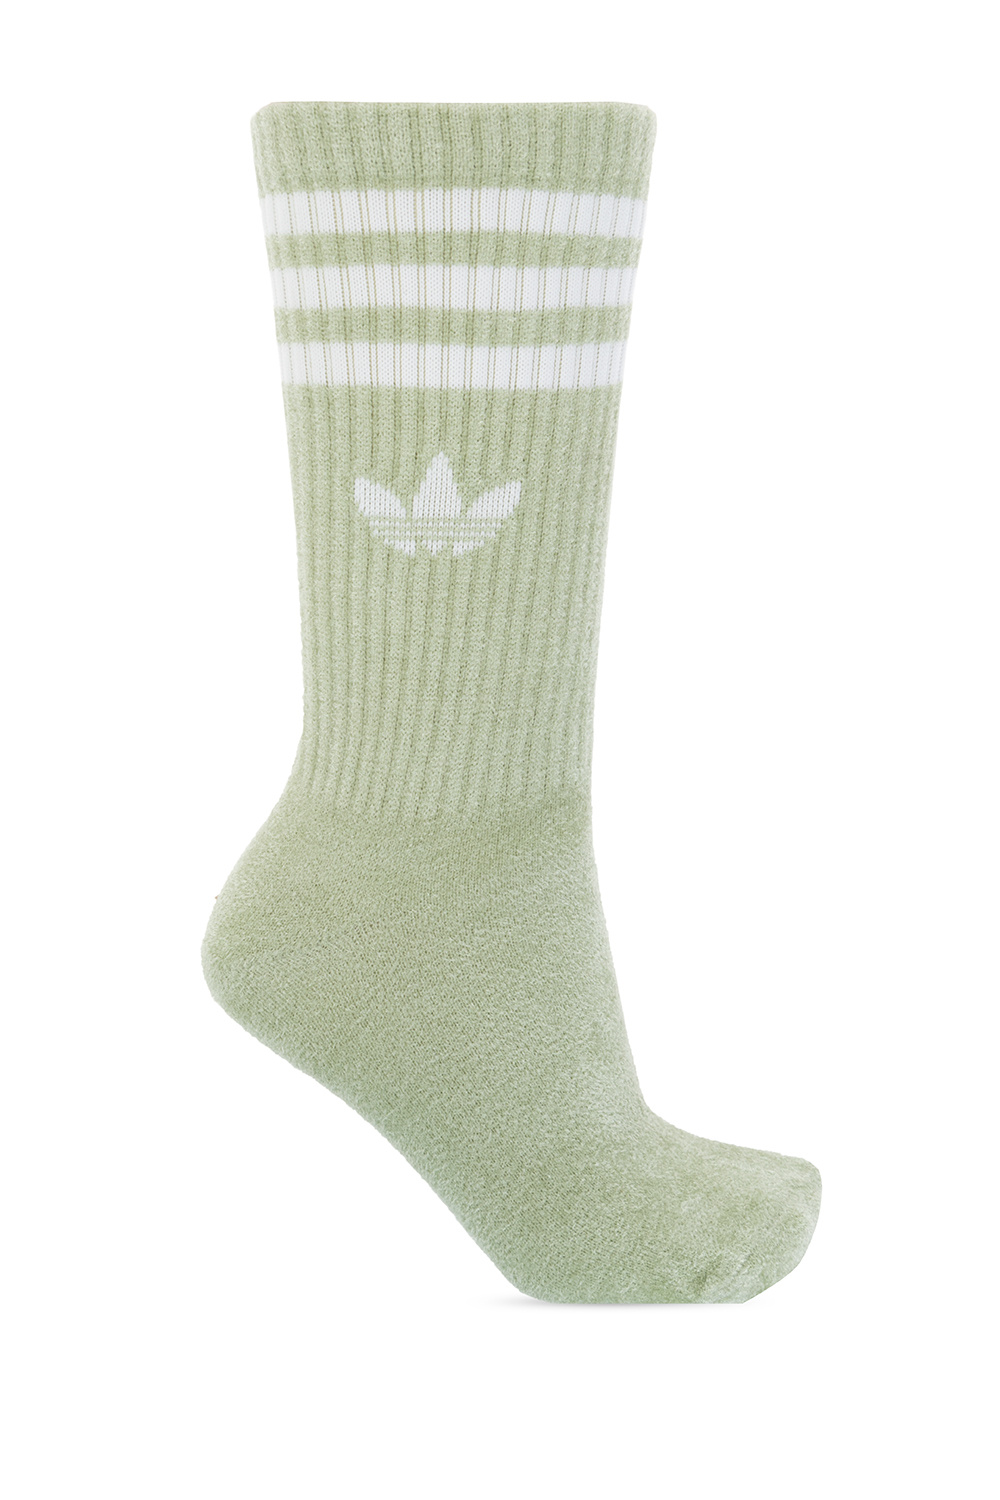 ADIDAS Originals Branded socks 2-pack